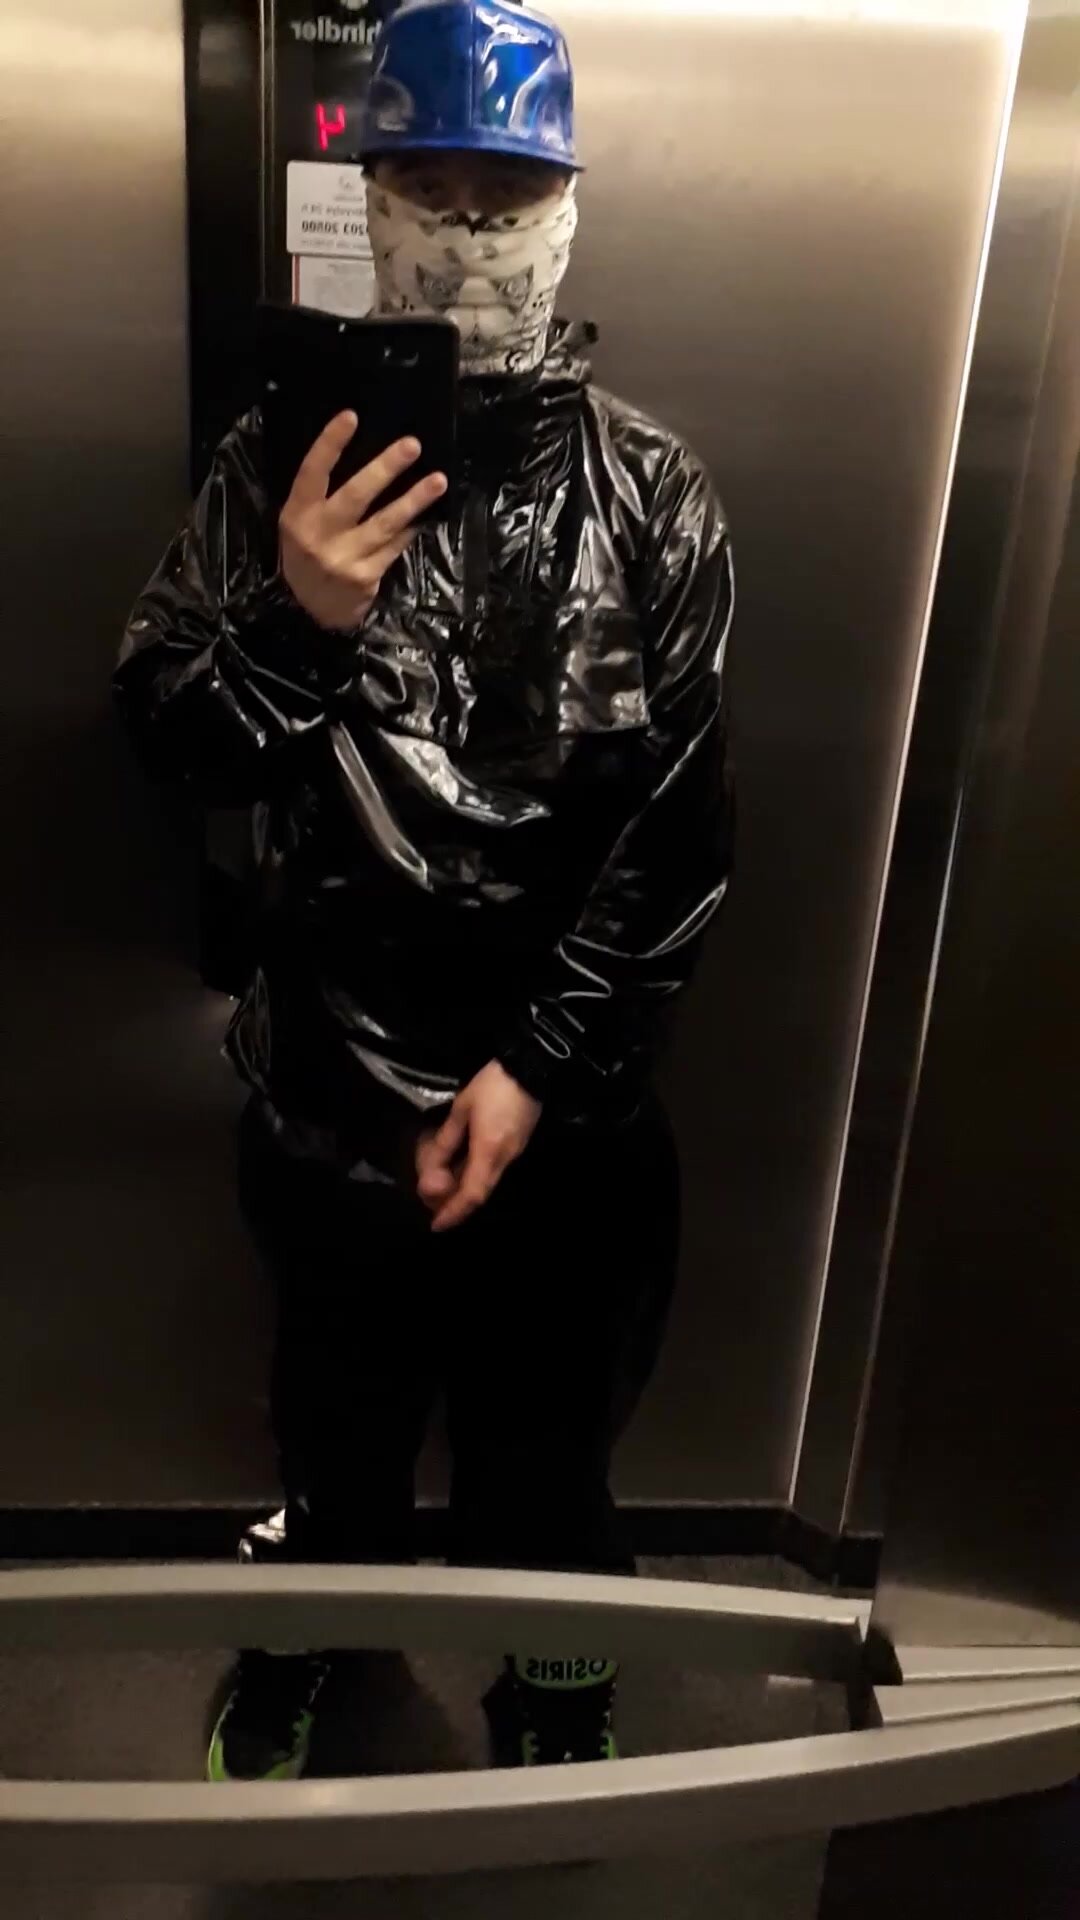 Wank in elevator wearing pvc hoodie and baggy pants